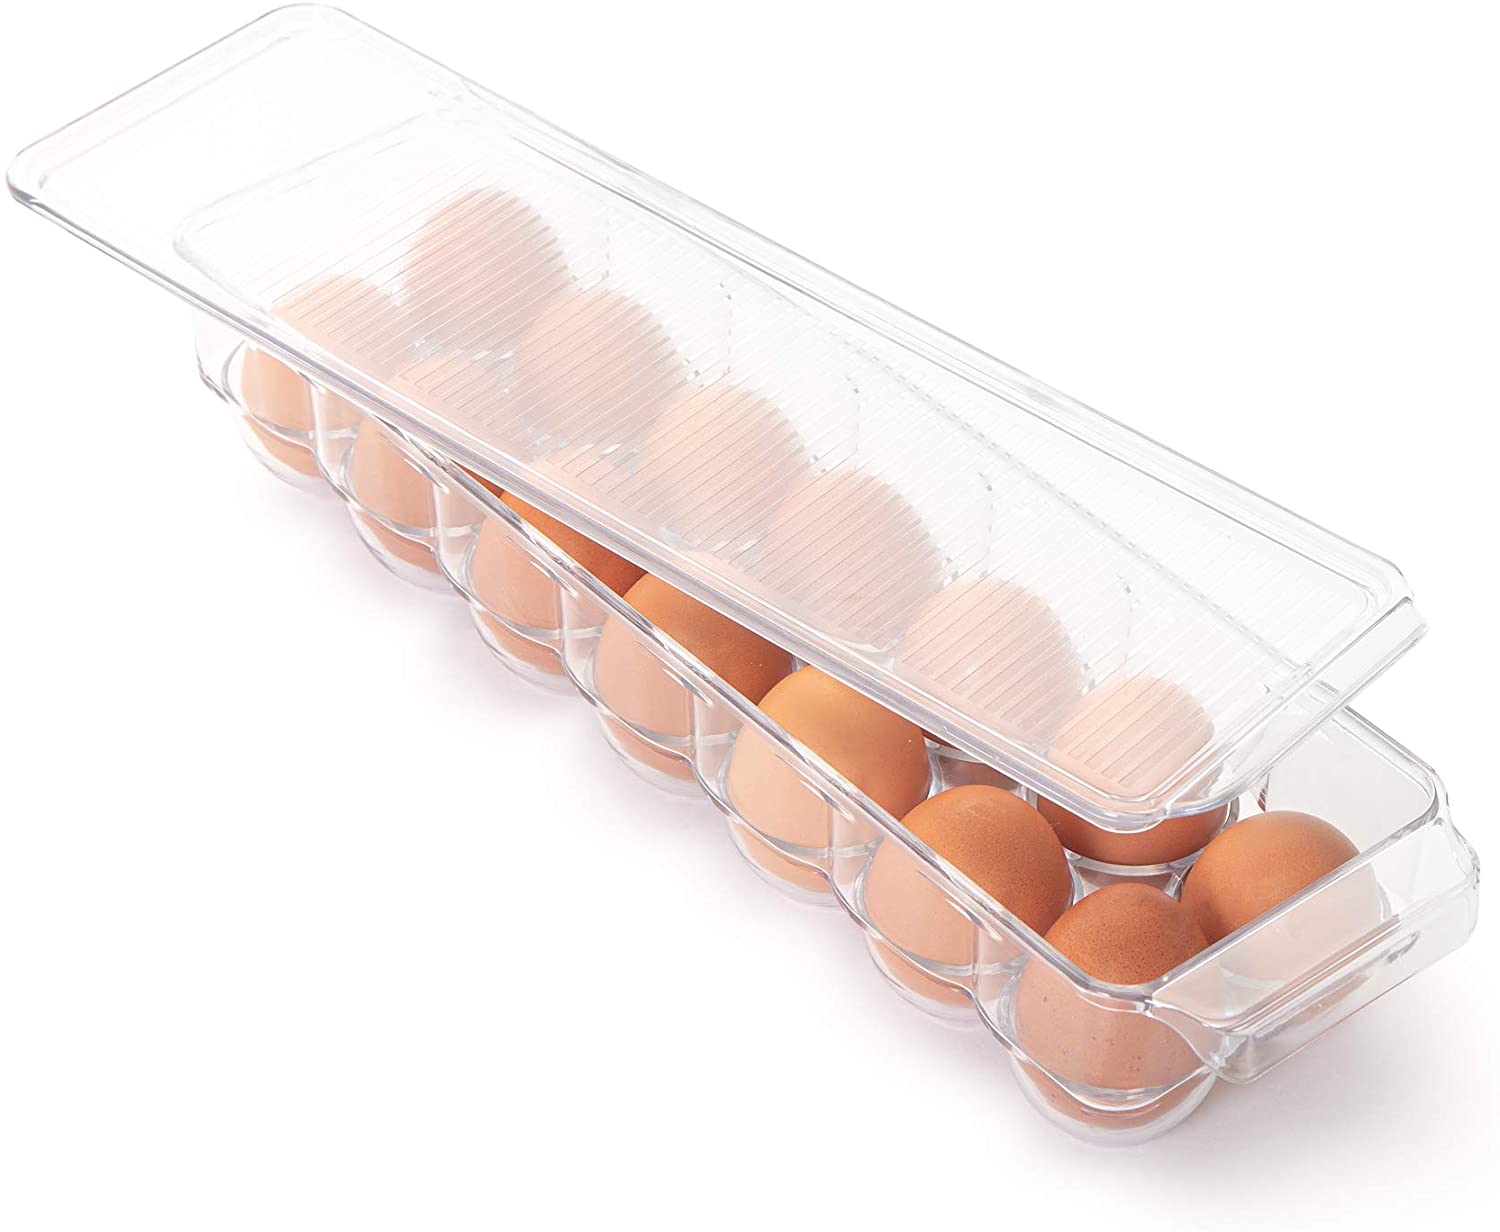 http://www.shopsmartdesign.com/cdn/shop/products/stackable-refrigerator-egg-holder-bin-with-handle-and-lid-smart-design-kitchen-8465491-incrementing-number-464669.jpg?v=1679335885